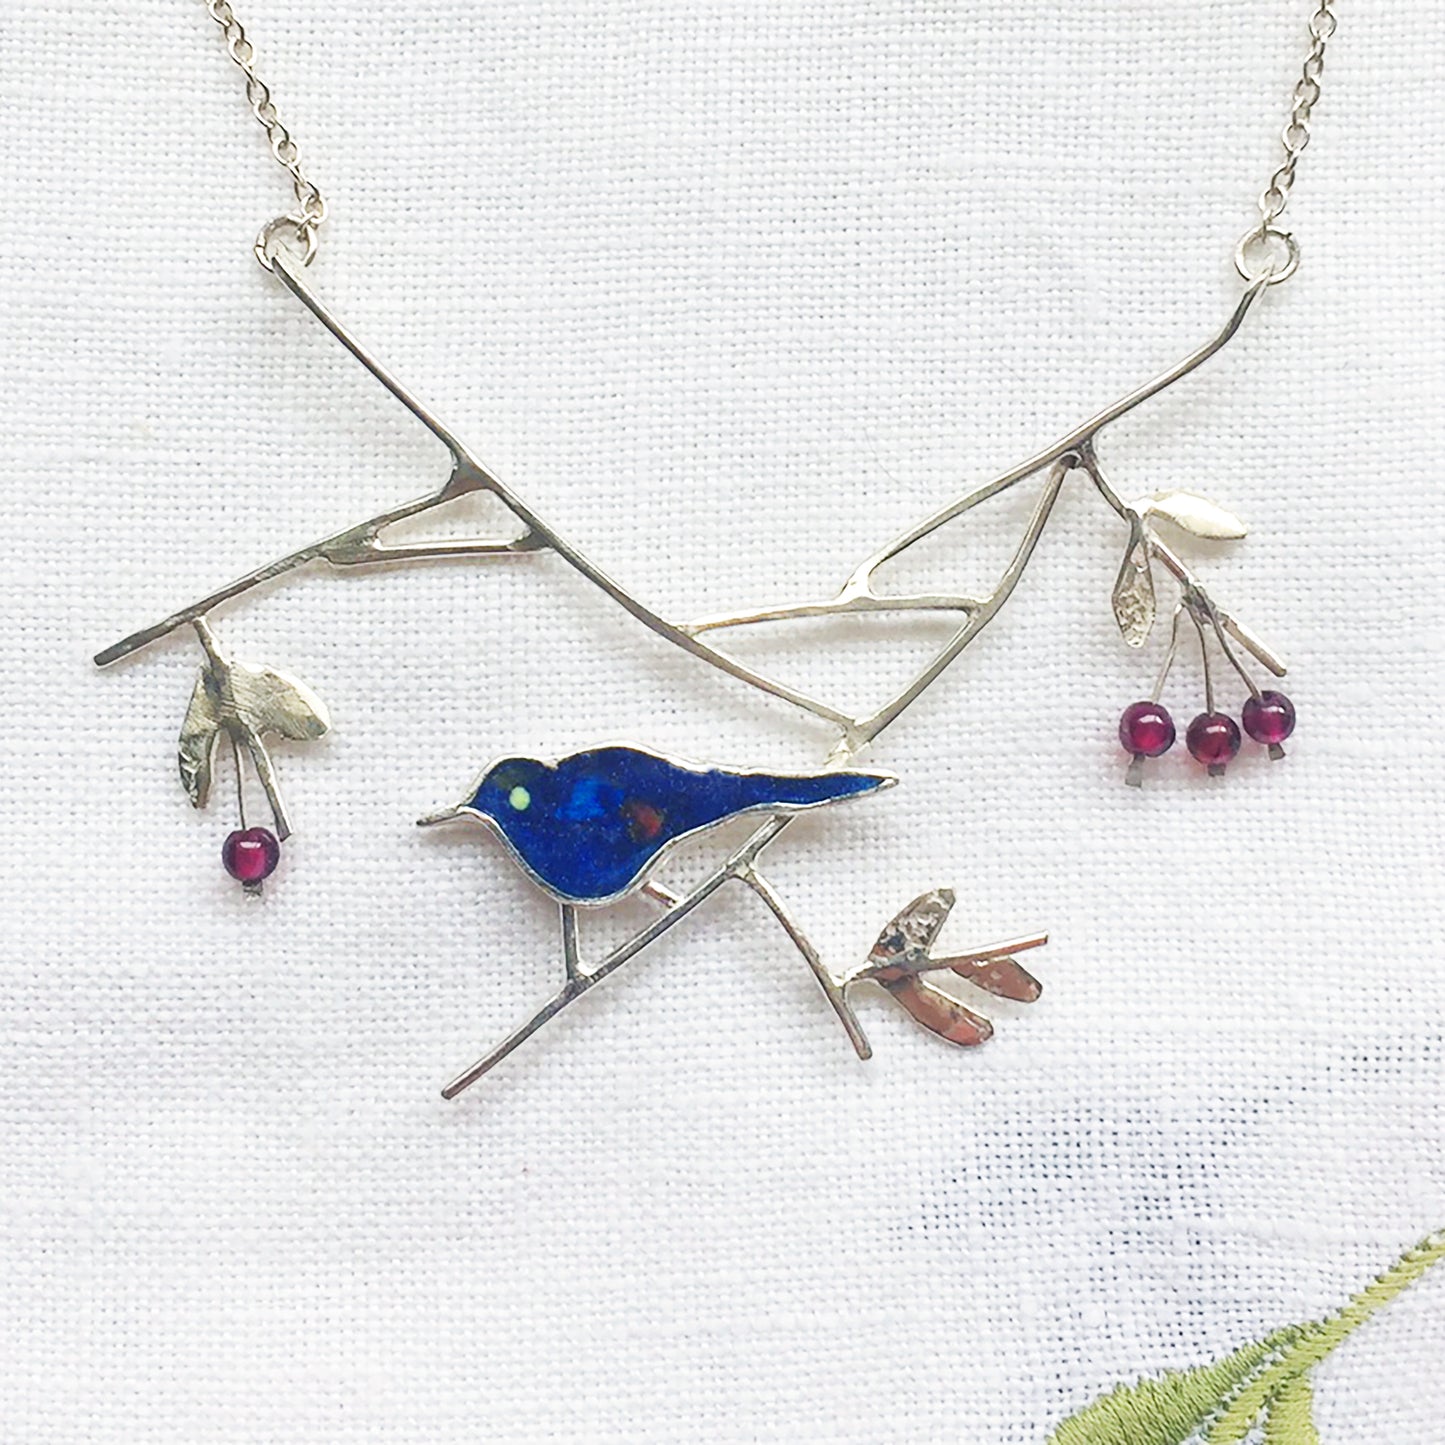 Blackbird with elderberries necklace